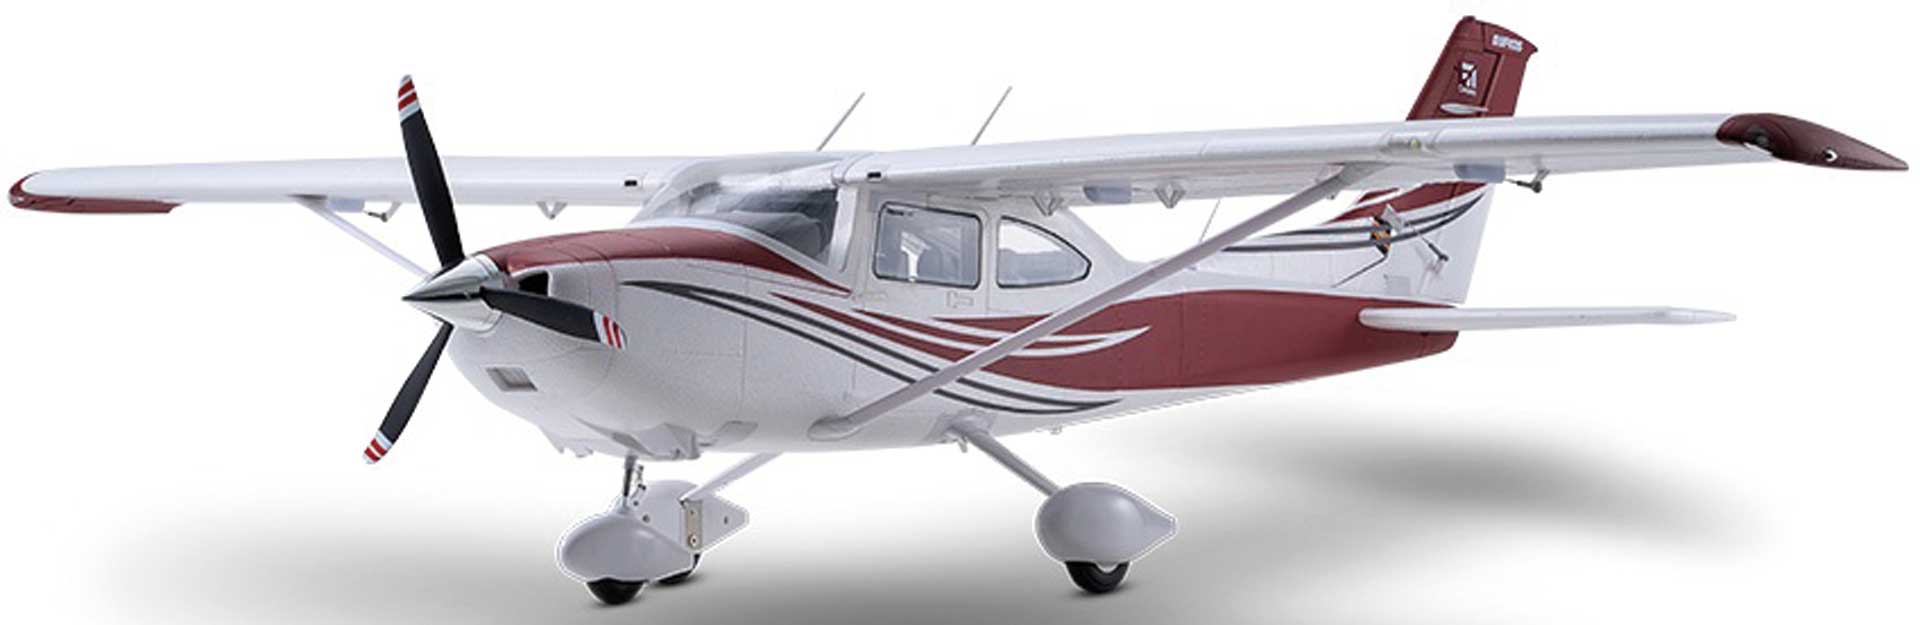 FMS Cessna 182 PNP rouge - 150 cm